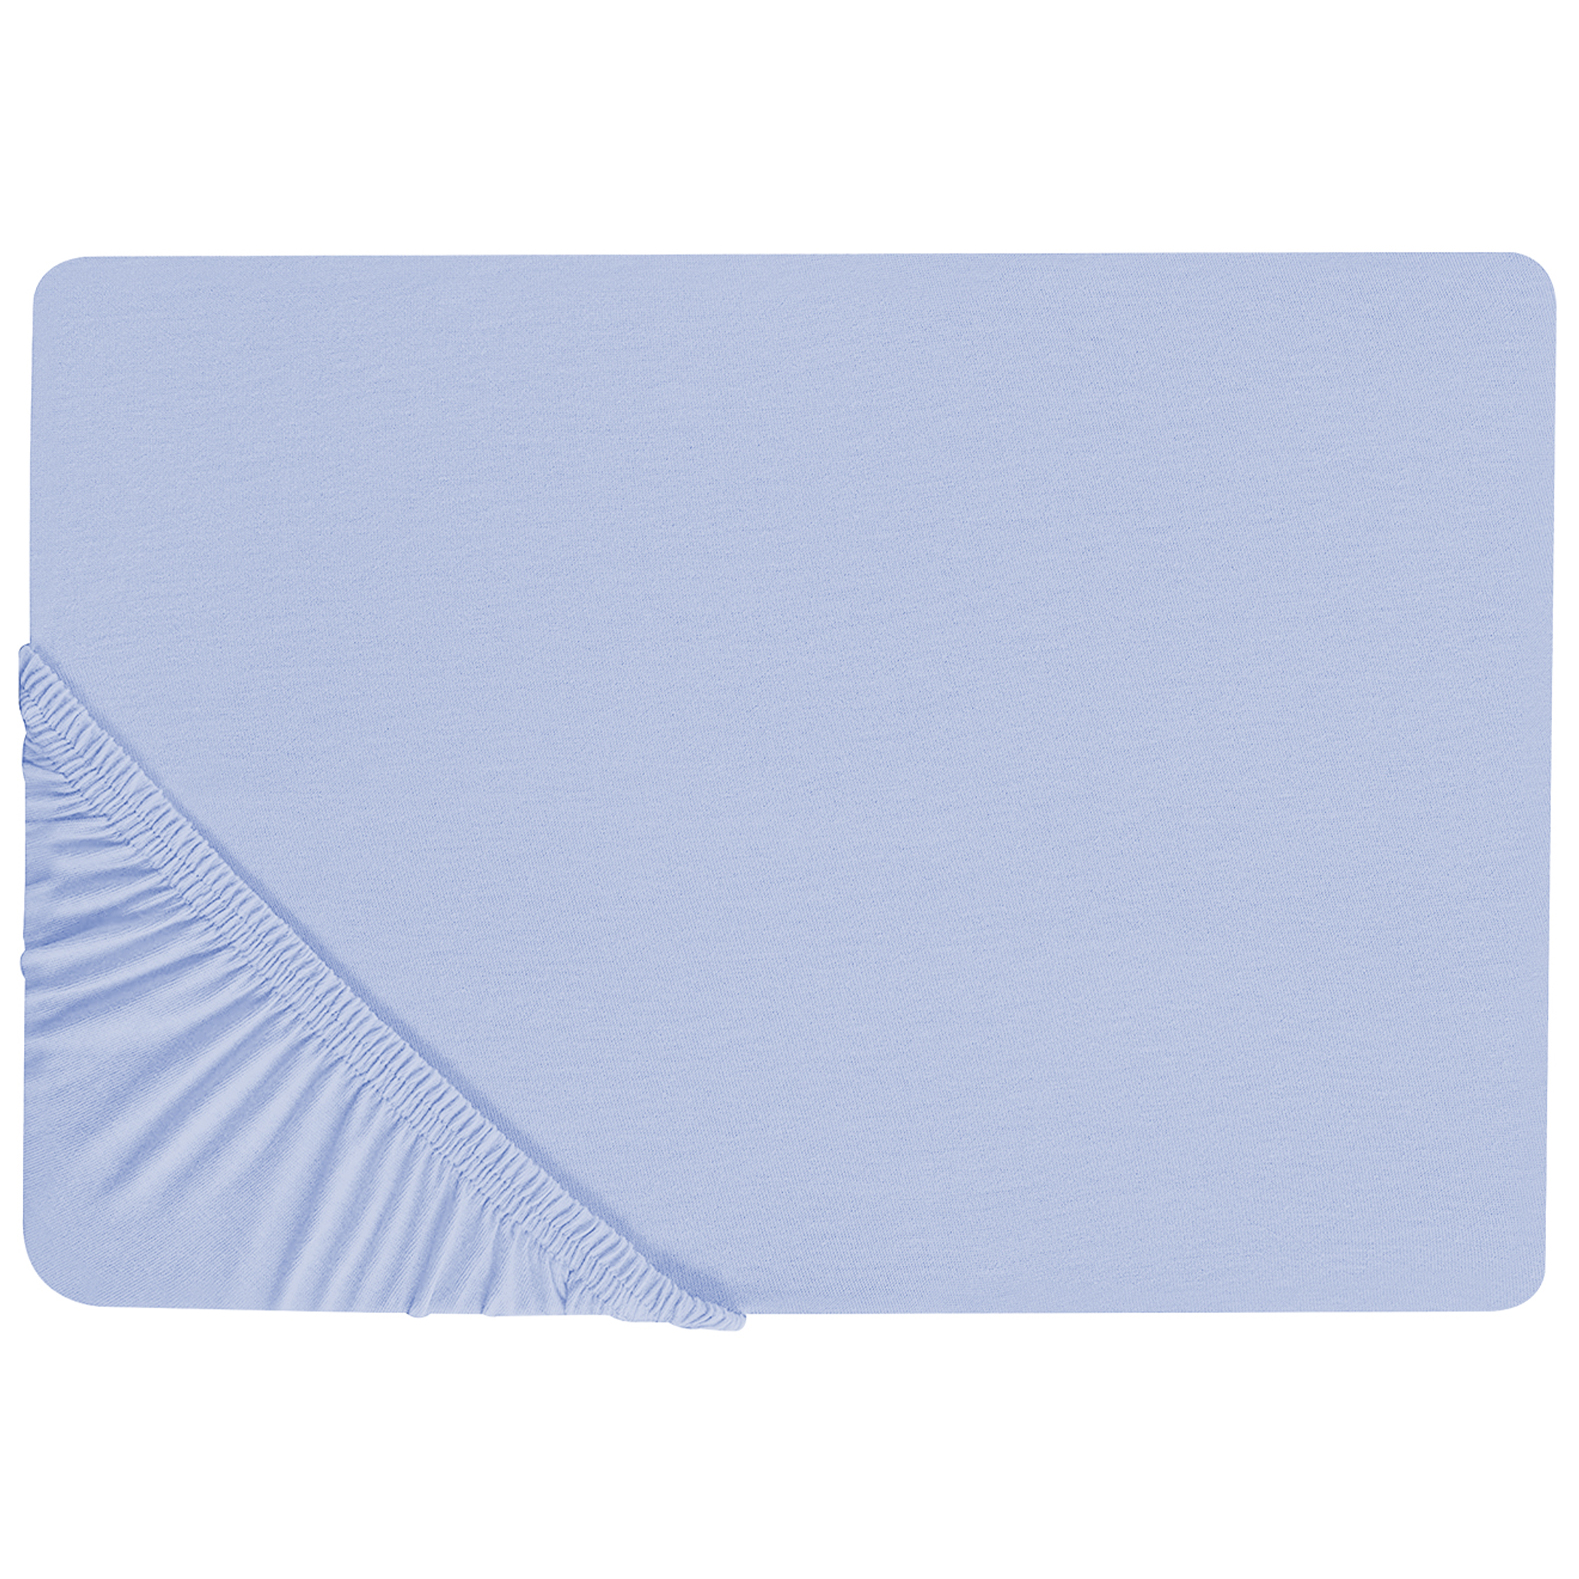 Drap-housse en coton 140 x 200 cm bleu clair JANBU 